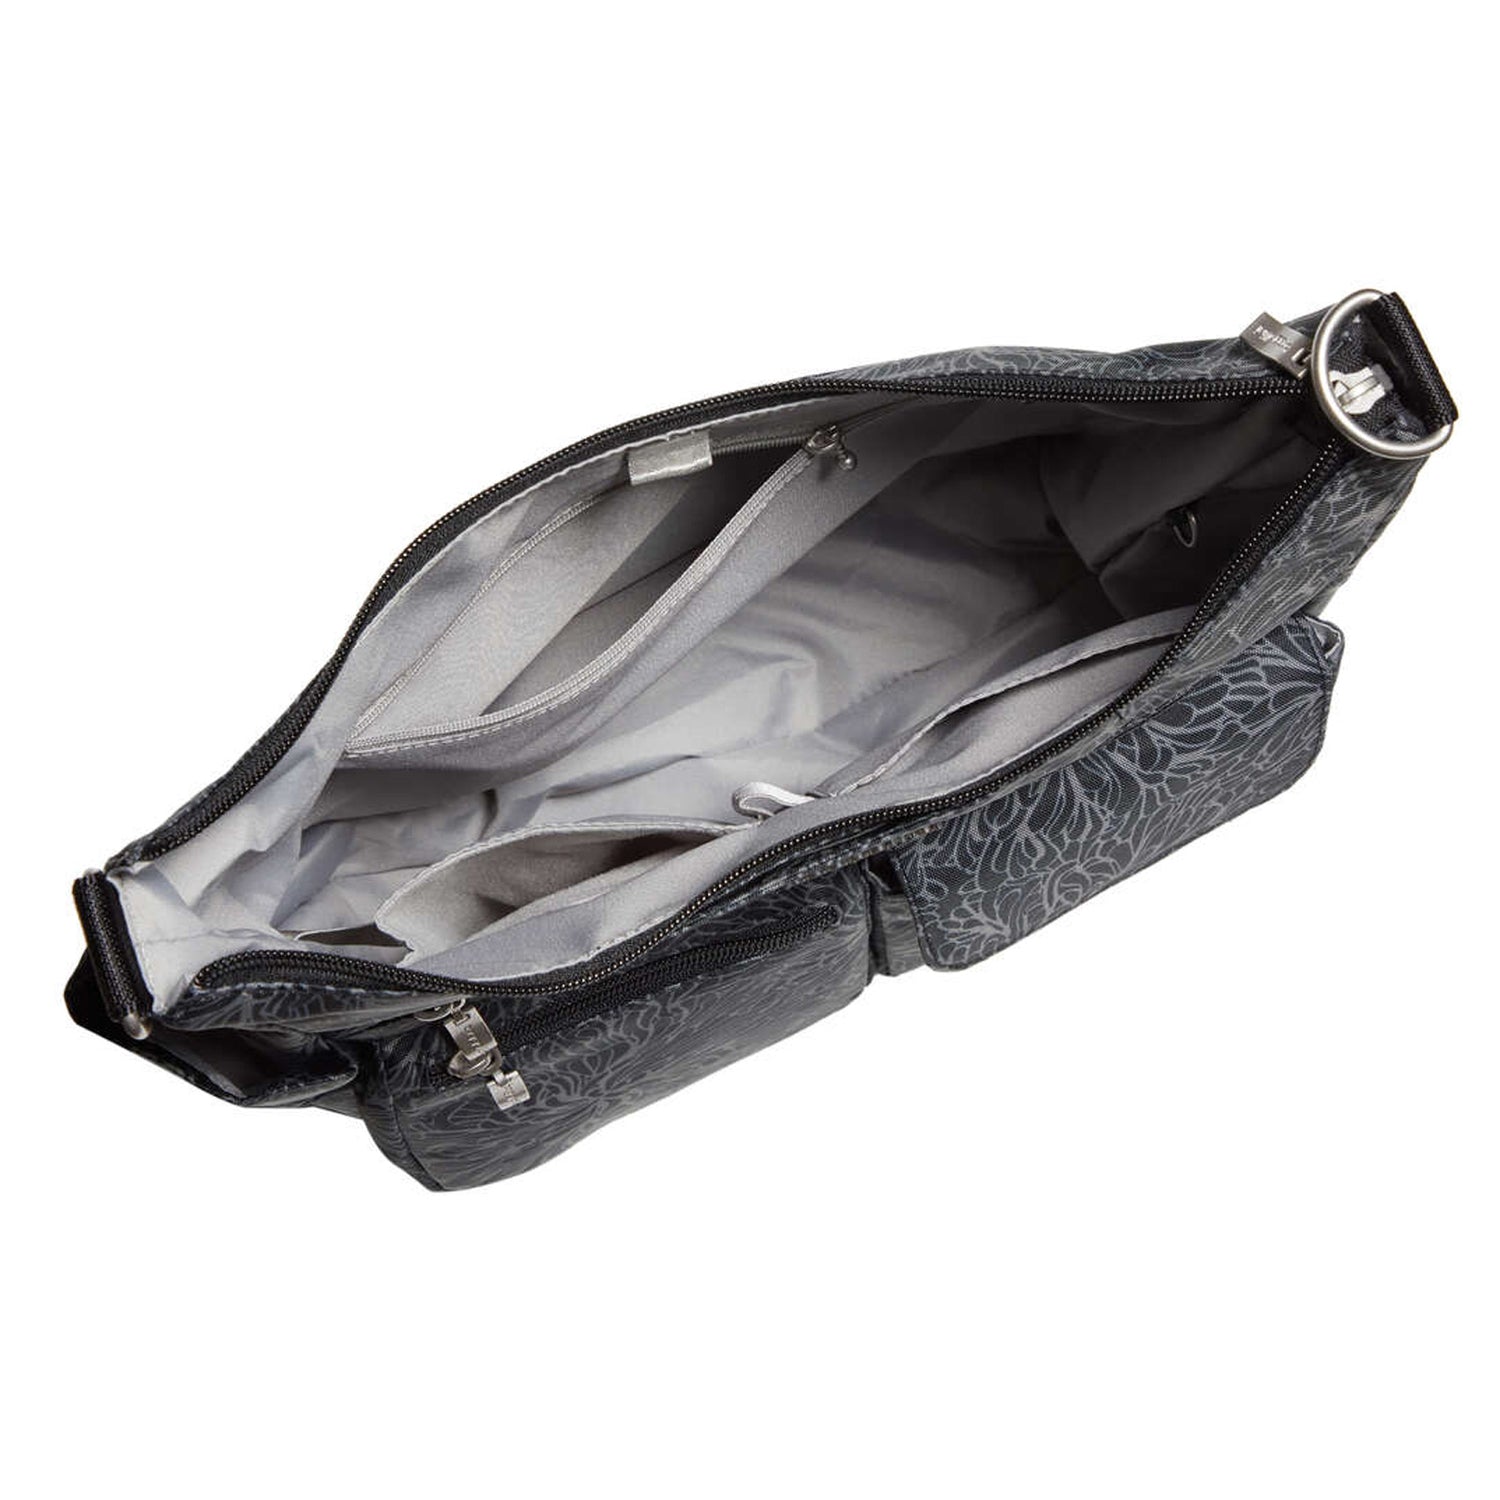 HOBO, Bags, Hobo Agile Leather Smartphone Crossbody Bag Black